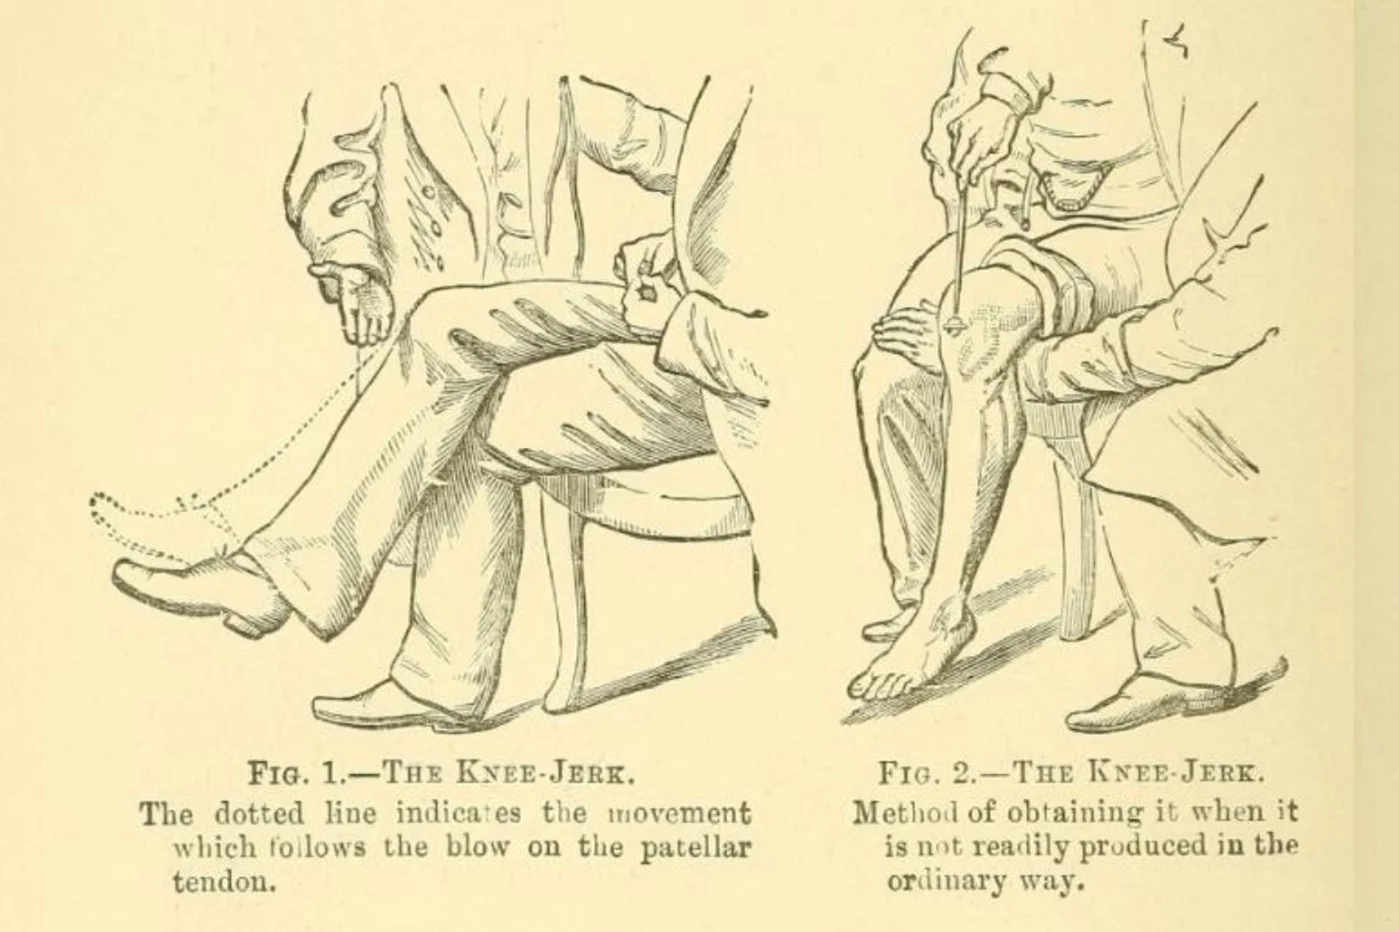 Reflejo rotuliano: al percutir el tendón rotuliano, se contrae el músculo cuádriceps y se produce la extensión de la rodilla.